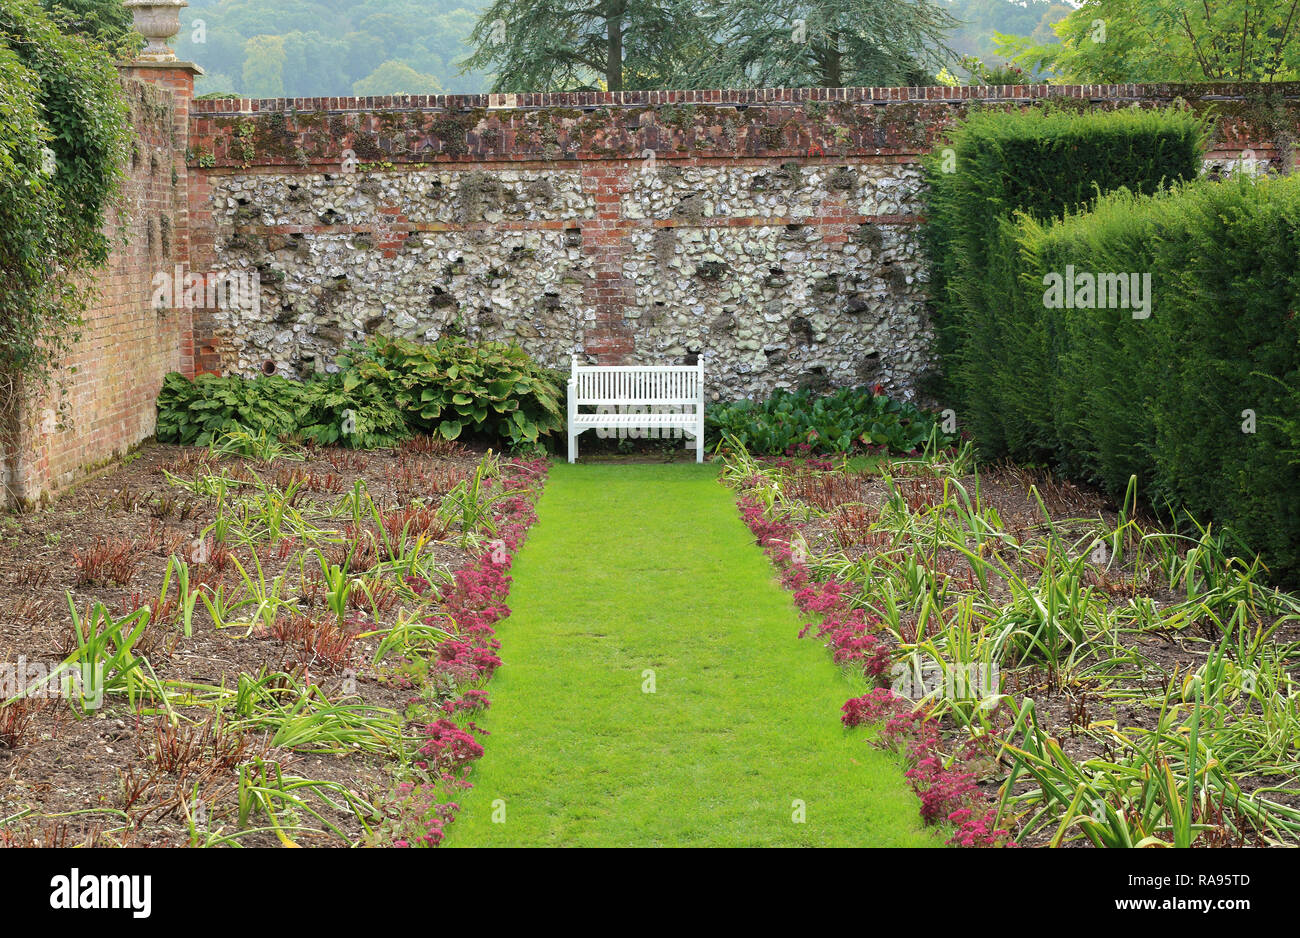 Siège de jardin en bois blanc, dans un jardin clos avec mur de briques et silex Banque D'Images